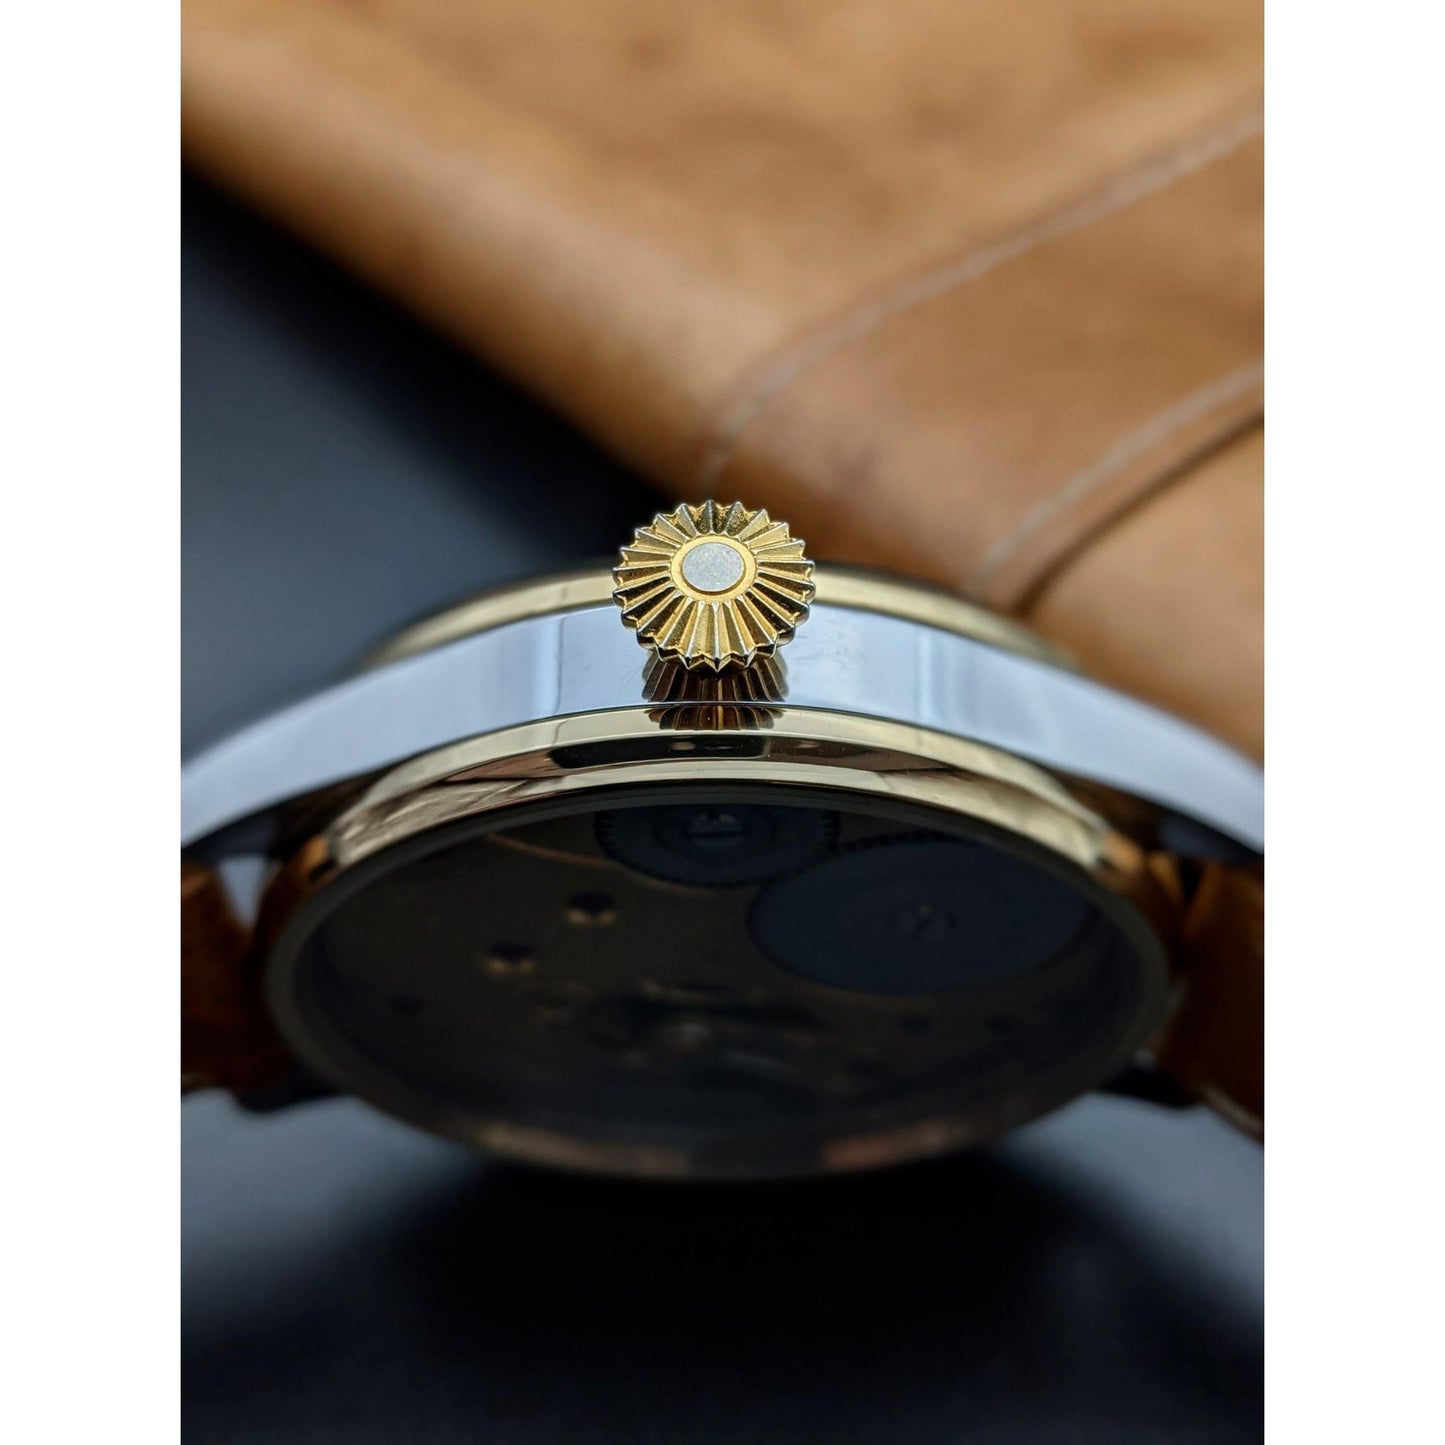 Deutsche Uhren Fabrikation Glashütte "OLIW" Lange Uhr Antique Watch1938 -  Only 6500 pcs was made -Marriage Watch